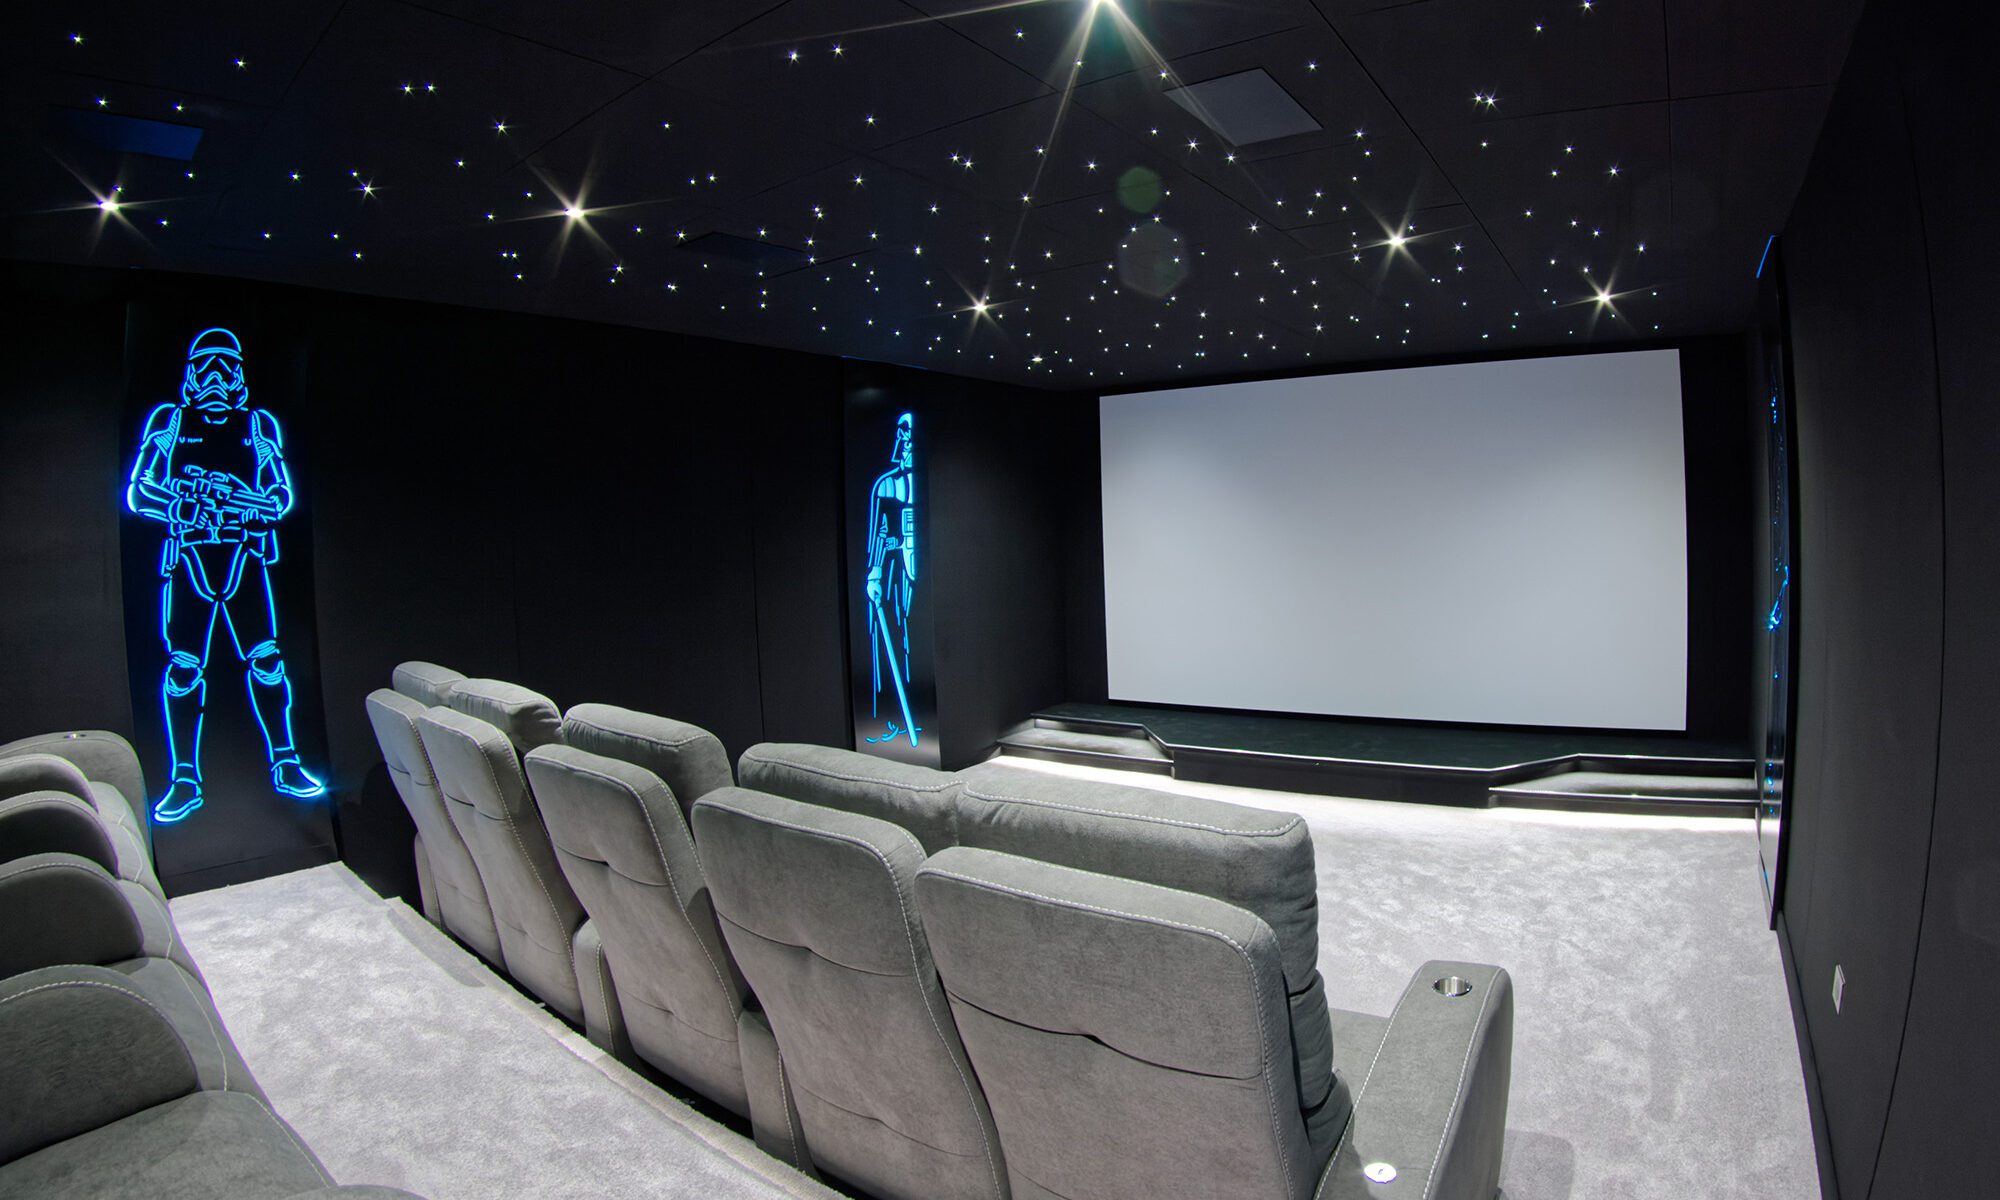 Salle de cinéma privée 33m2 avec 10 fauteuils en tissu gris, ciel étoilé, spots, panneaux décor lumineux Starwarsn, moquette grise à Orgeval